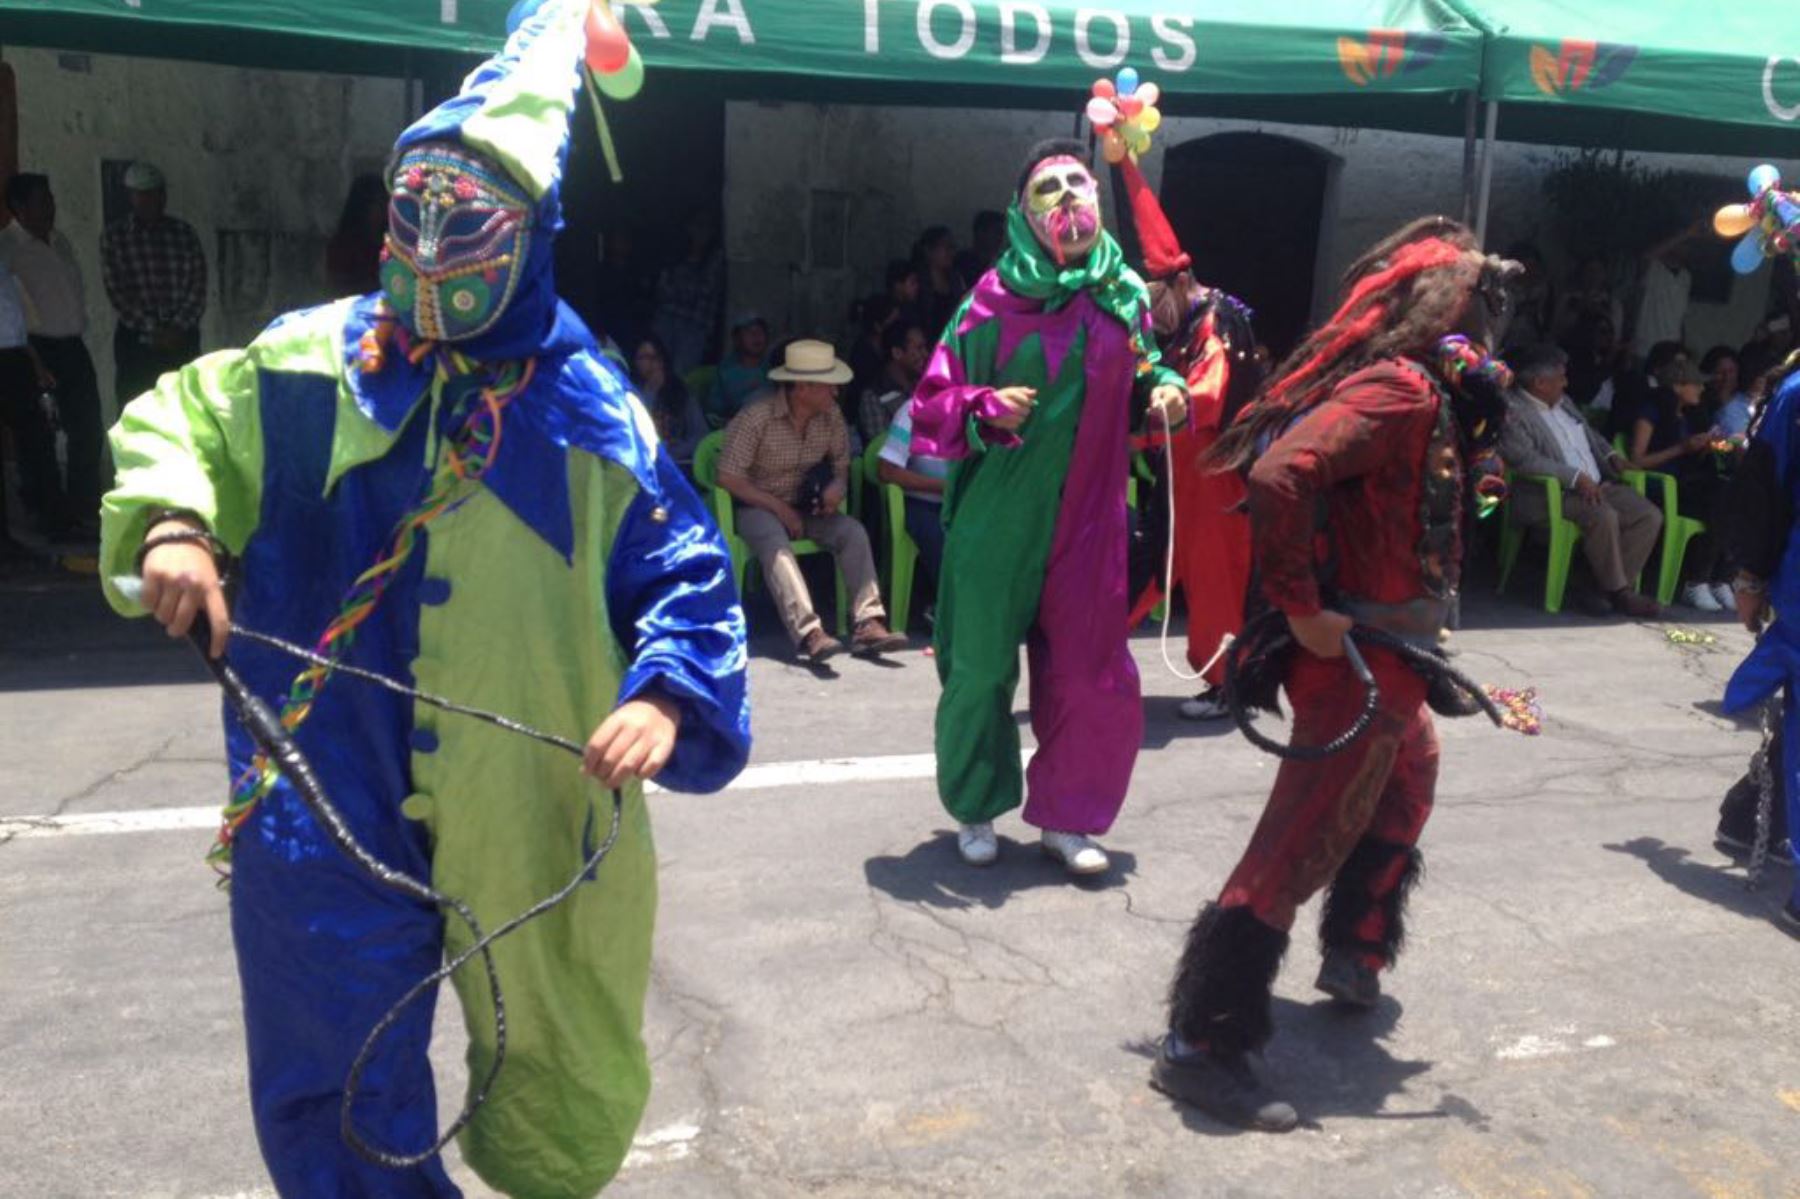 La festividad del exultante carnaval se vive hoy en el tradicional Carnaval Loncco, manifestación cultural que se desarrolla desde hace muchos años en el distrito de Cayma. Andina/Archivo